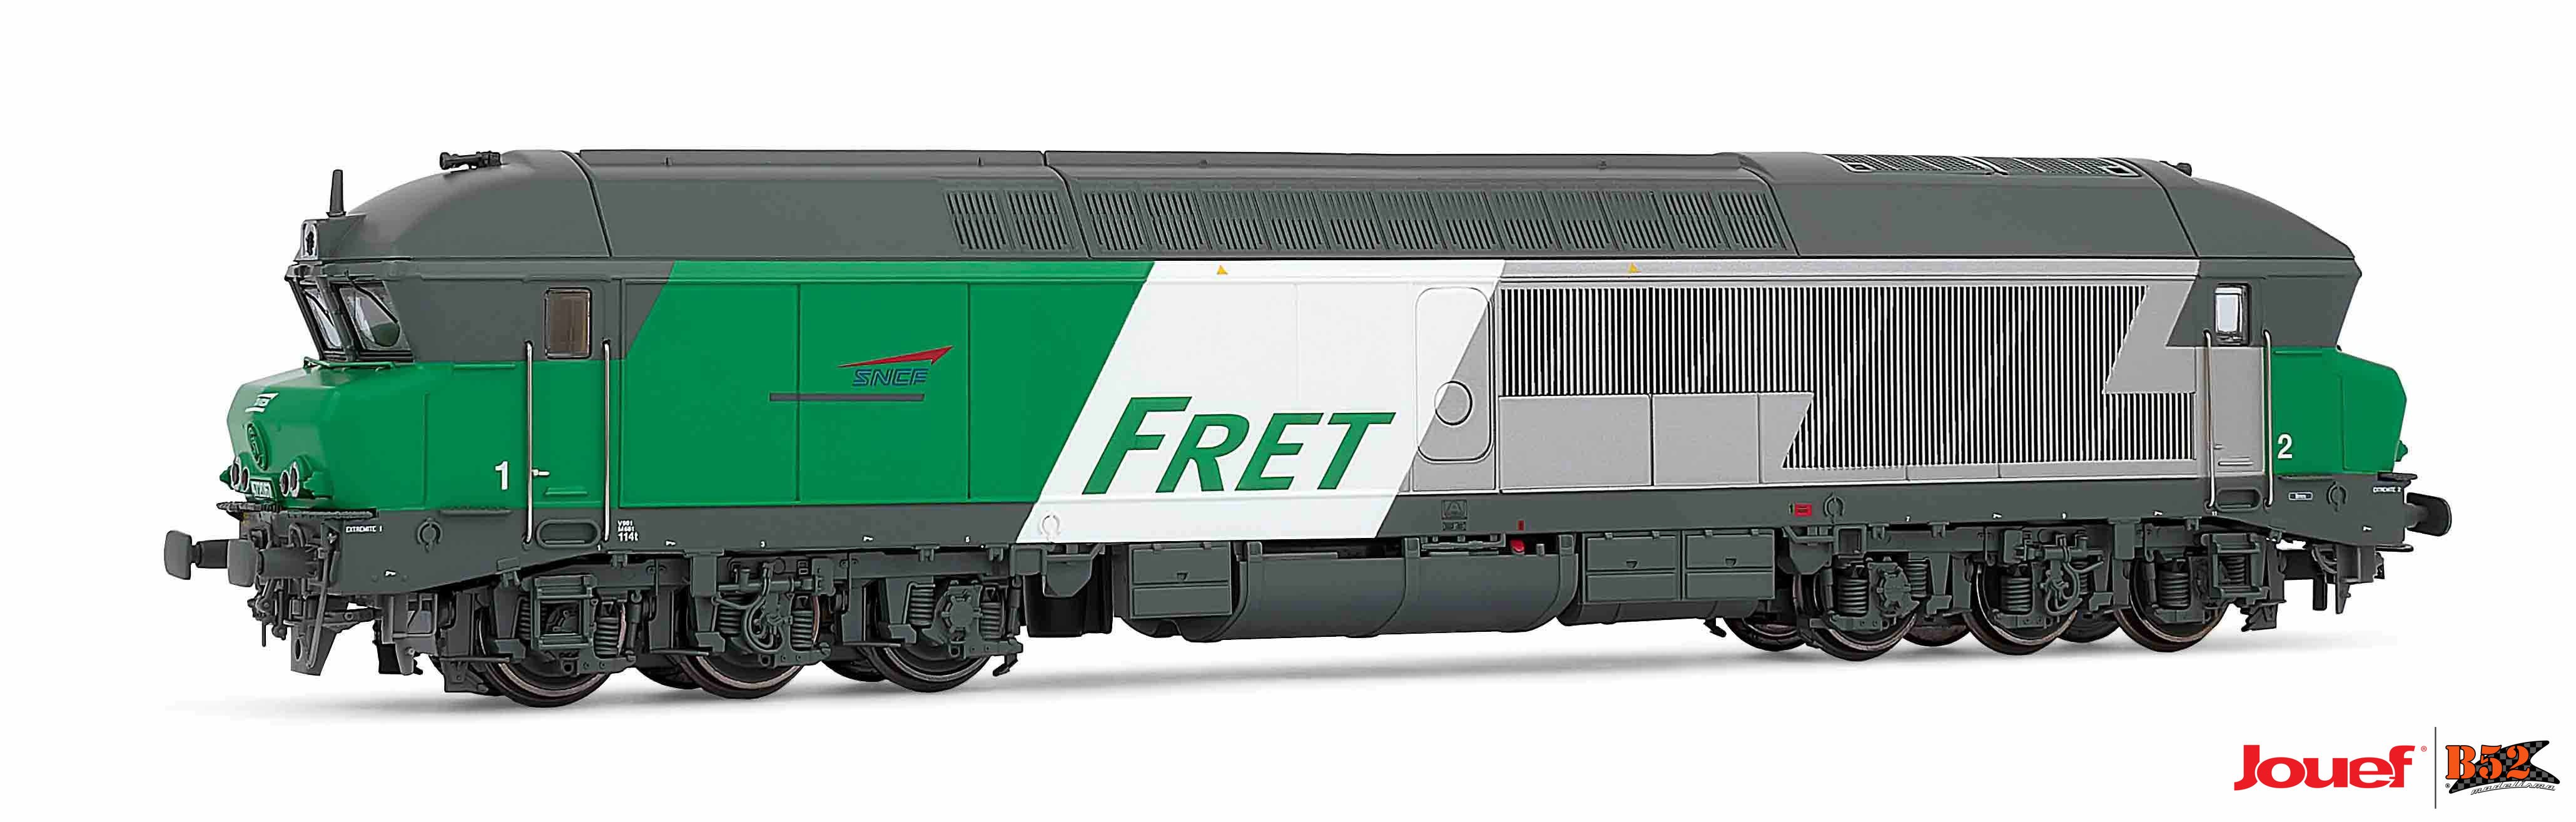 Jouef HO - Locomotiva Diesel CC 472010, SNCF: HJ2602